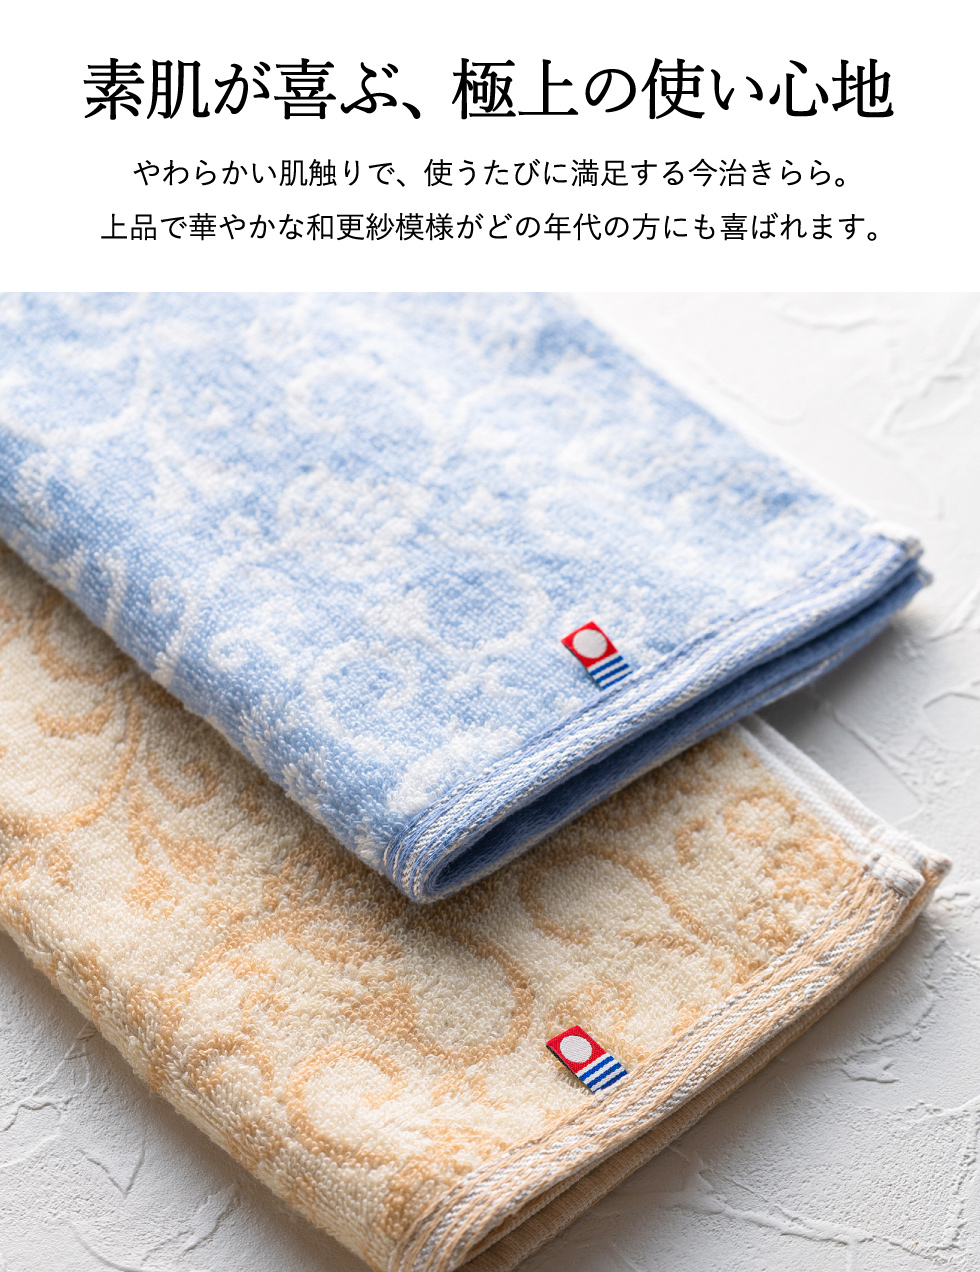 泉州タオル 高級綿糸シルバーグレーバスタオルセット2枚 まとめ売り タオル新品